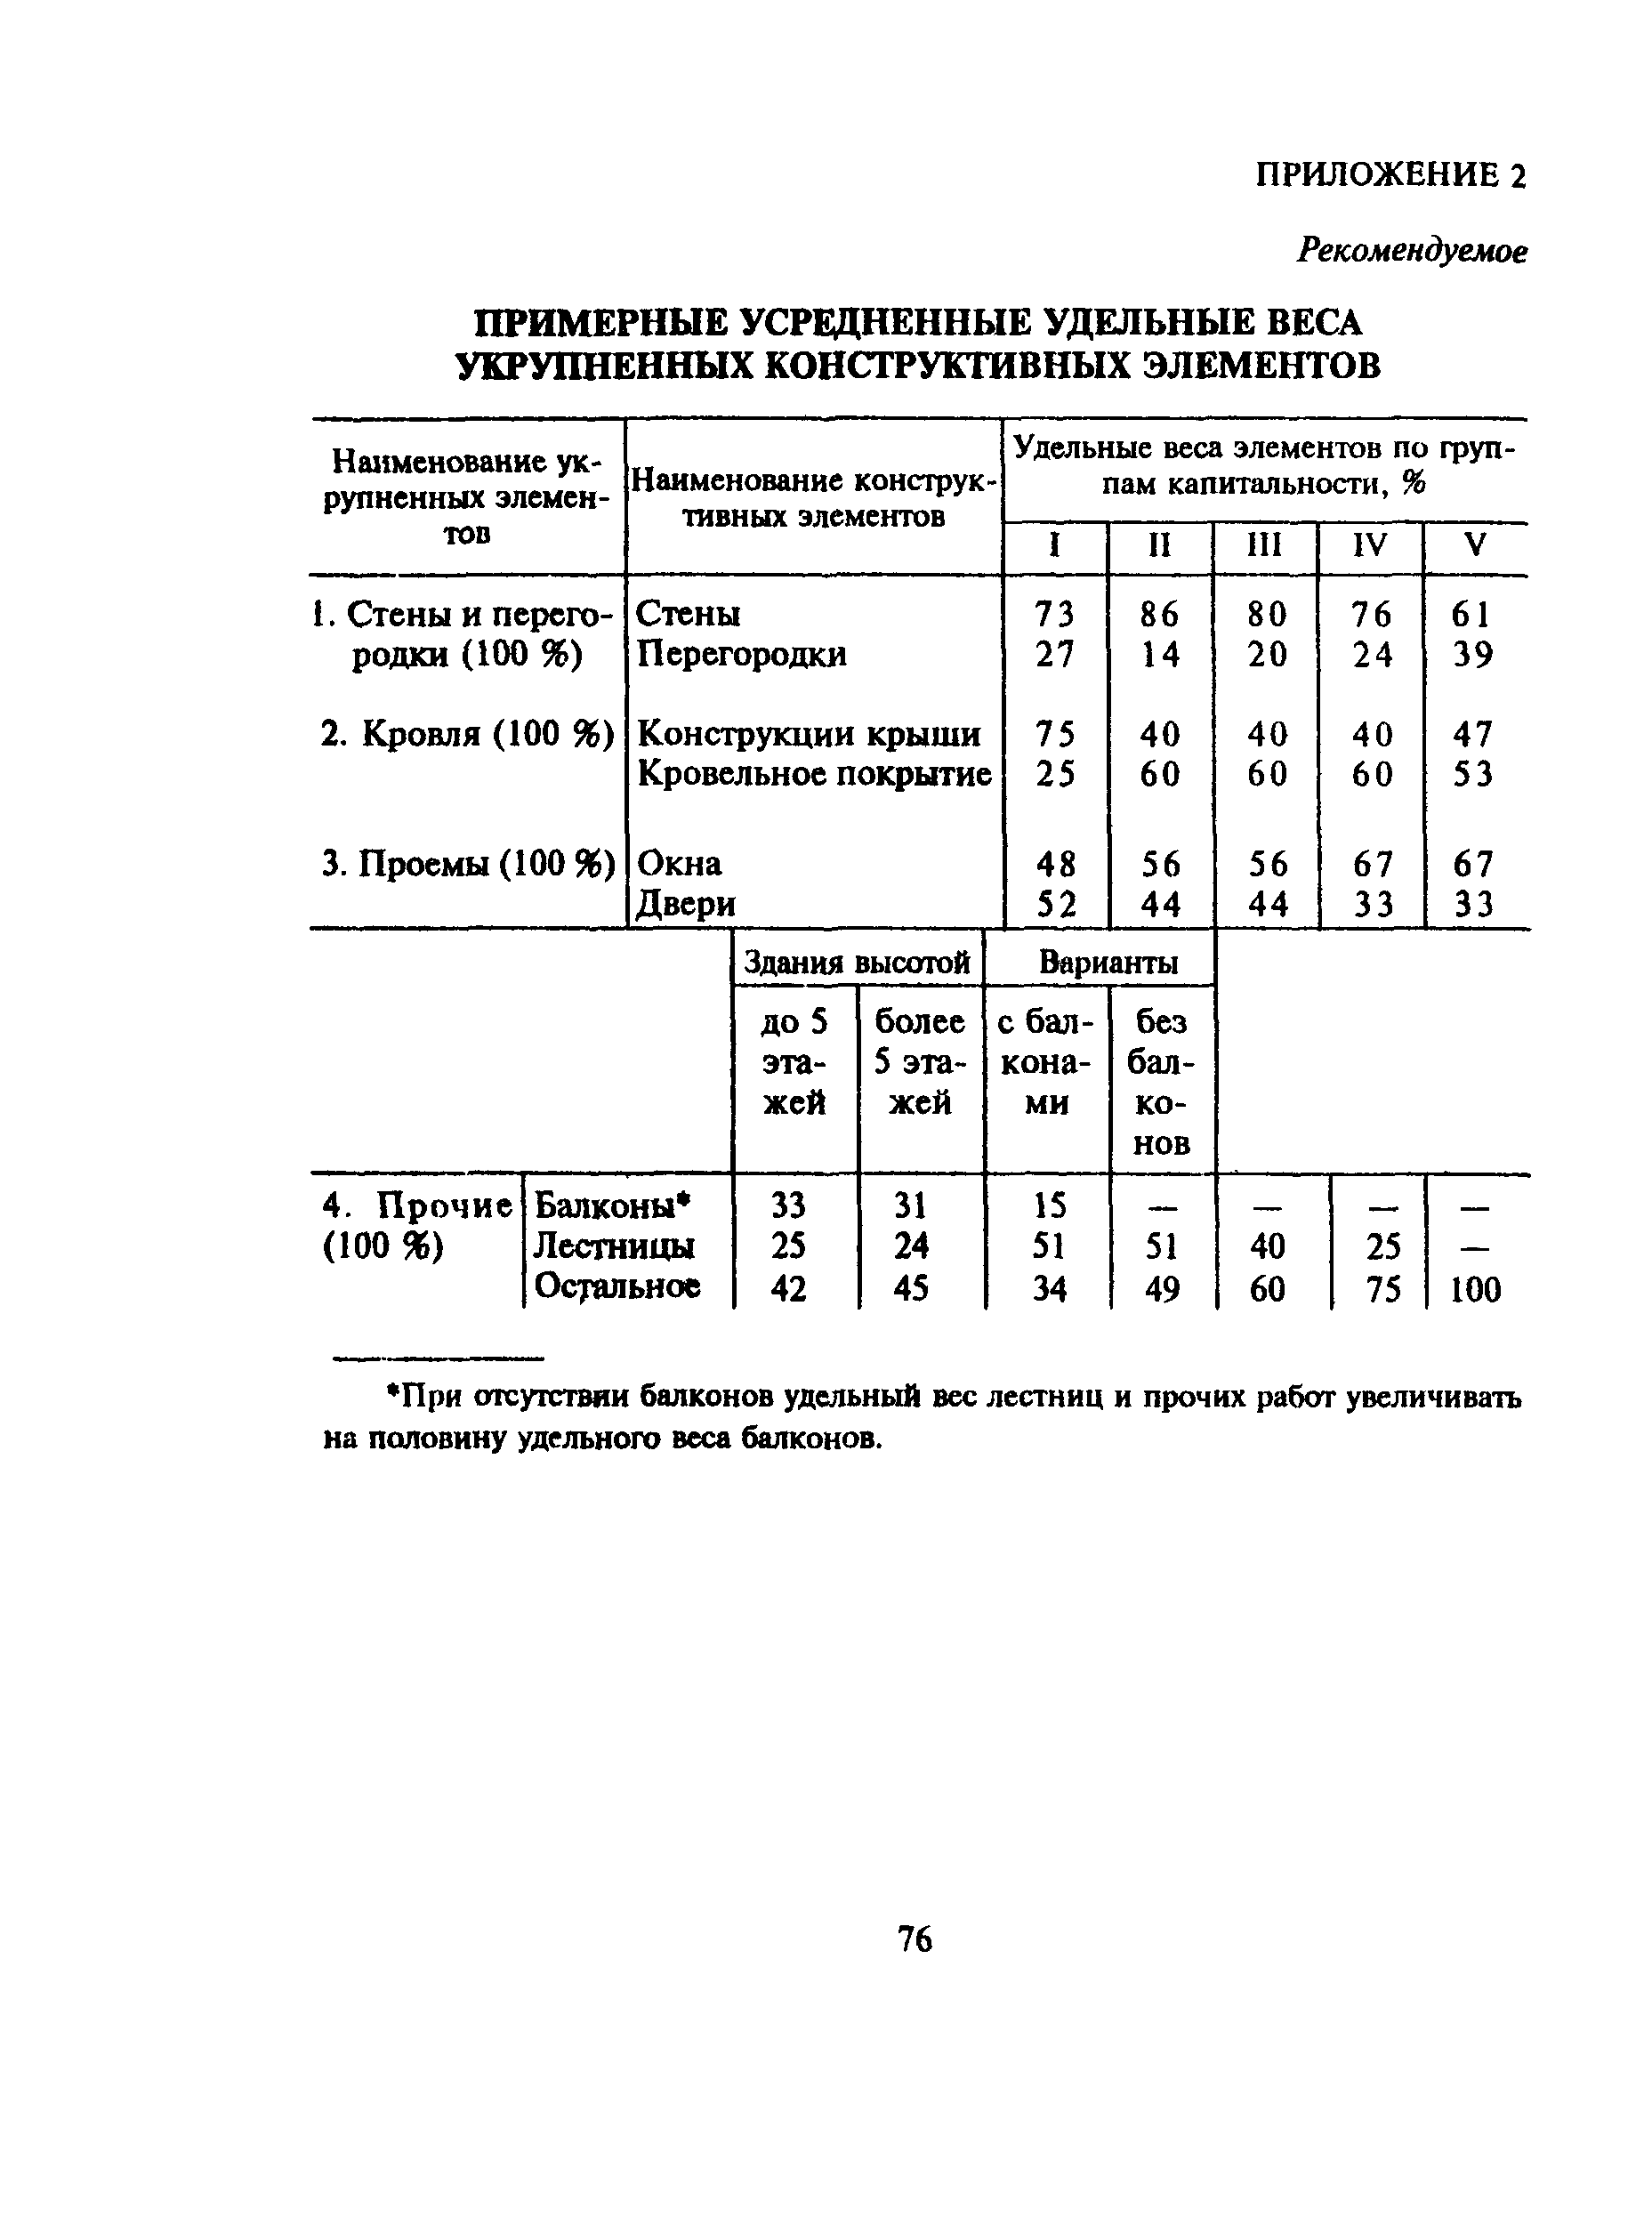 Удельные веса укрупненных конструктивных элементов,% (28 сб)